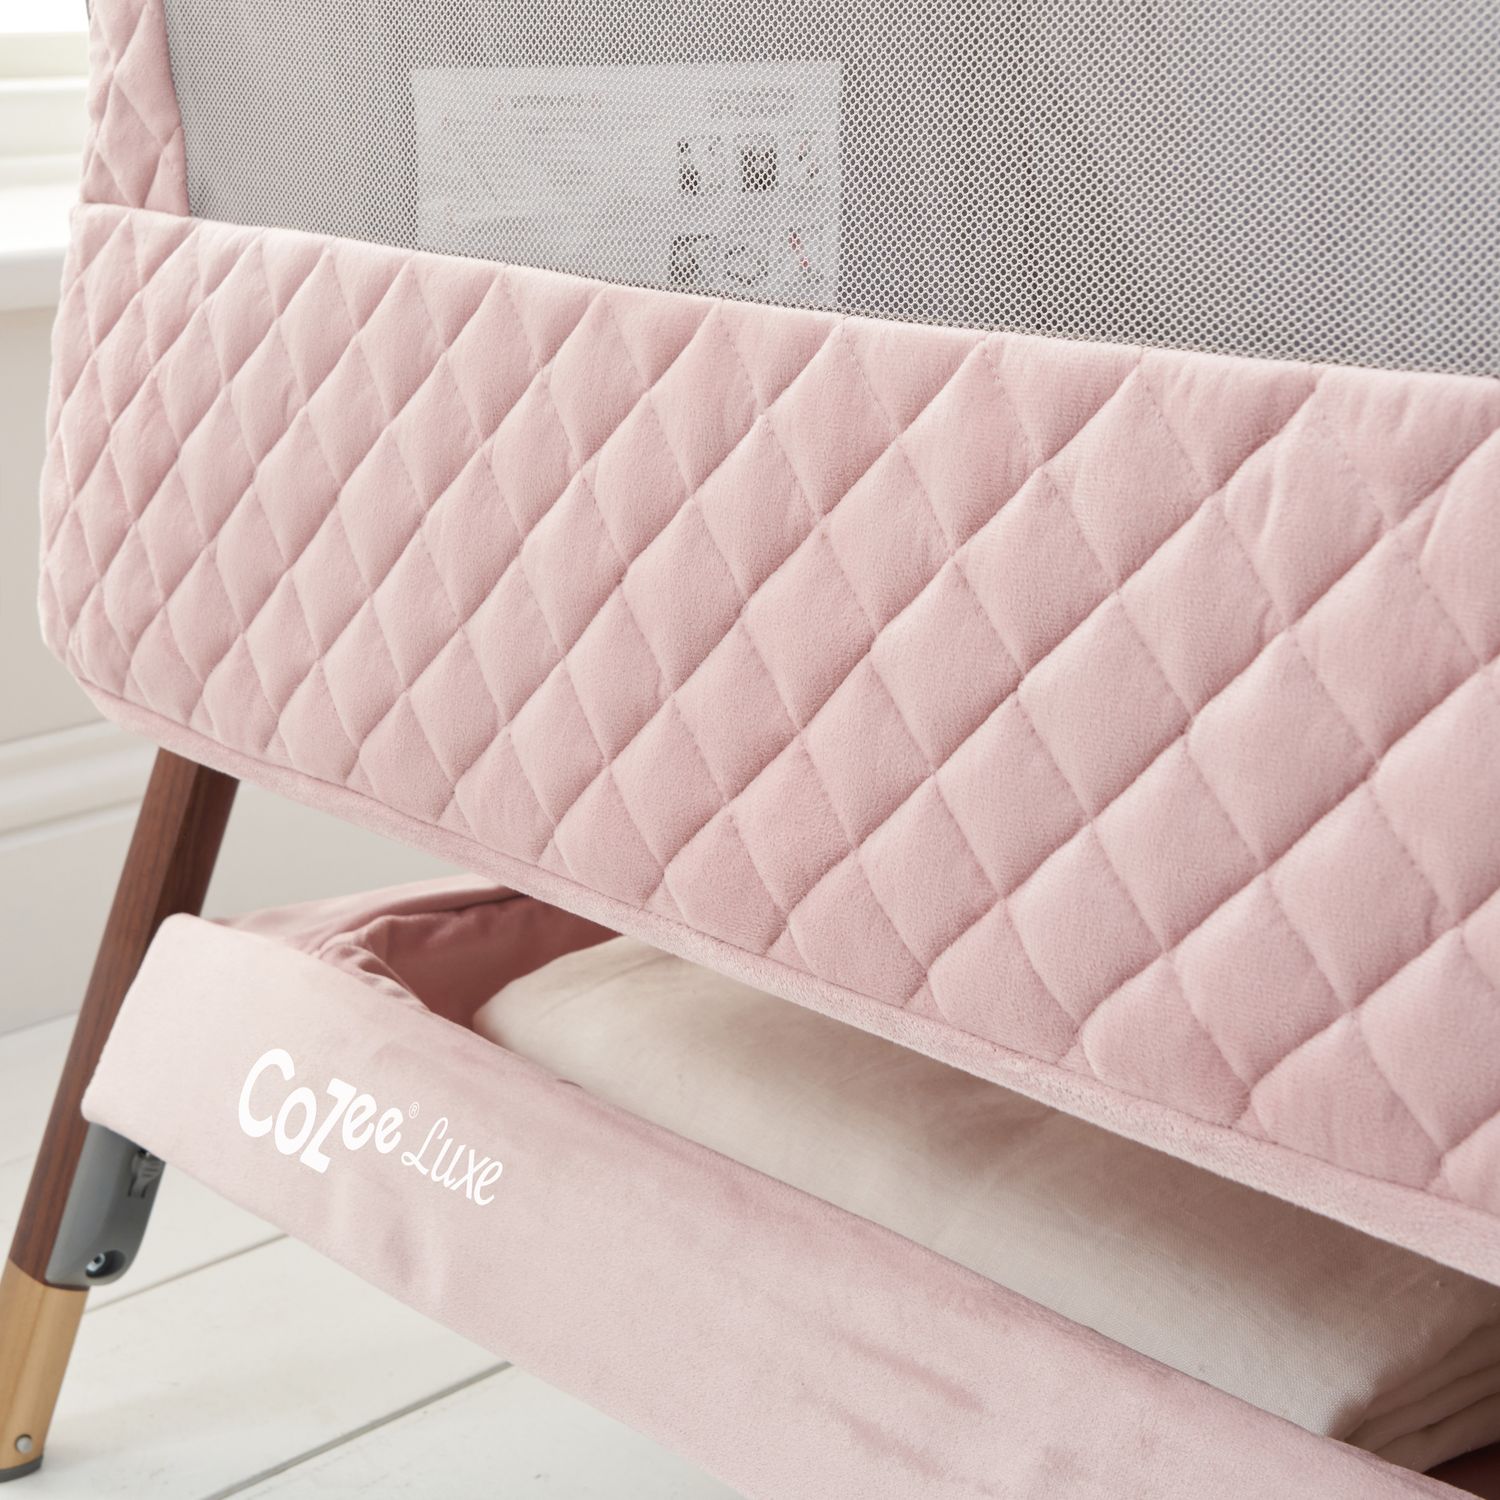 Кроватка Tutti Bambini CoZee Luxe, розовый (211208/6591) - фото 9